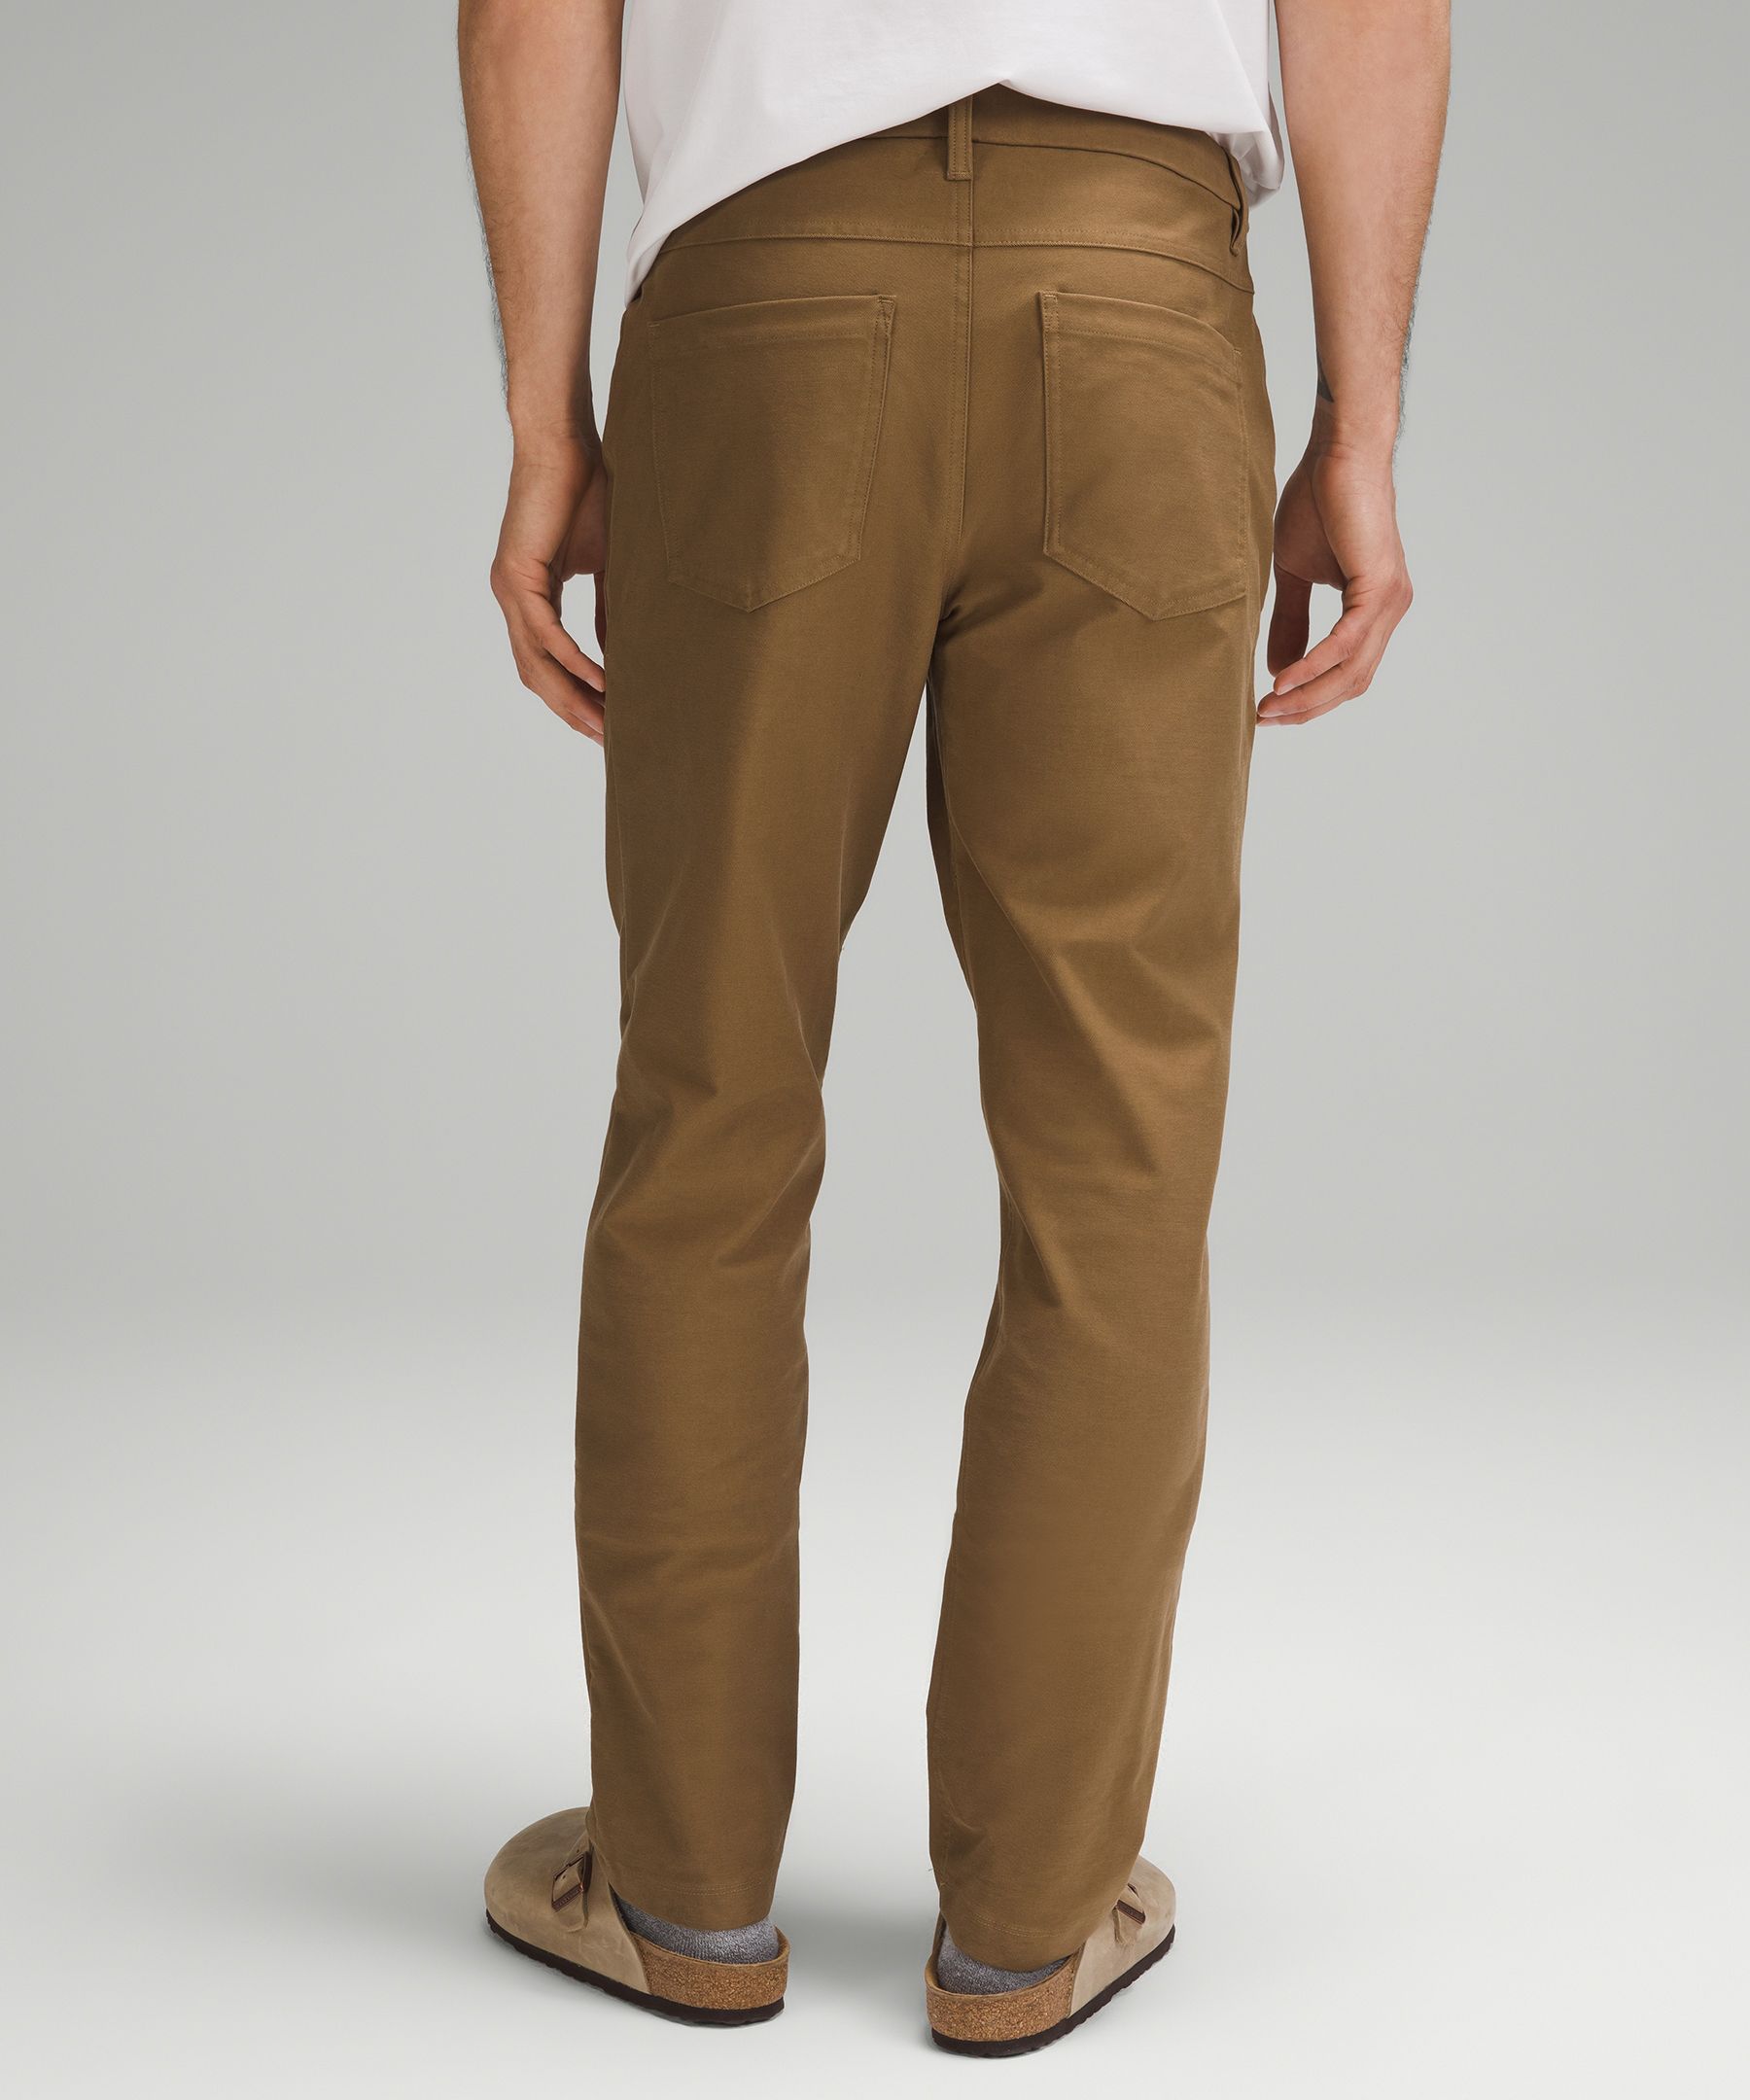 Lululemon athletica ABC Classic-Fit 5 Pocket Pant 34 *Utilitech, Men's  Trousers